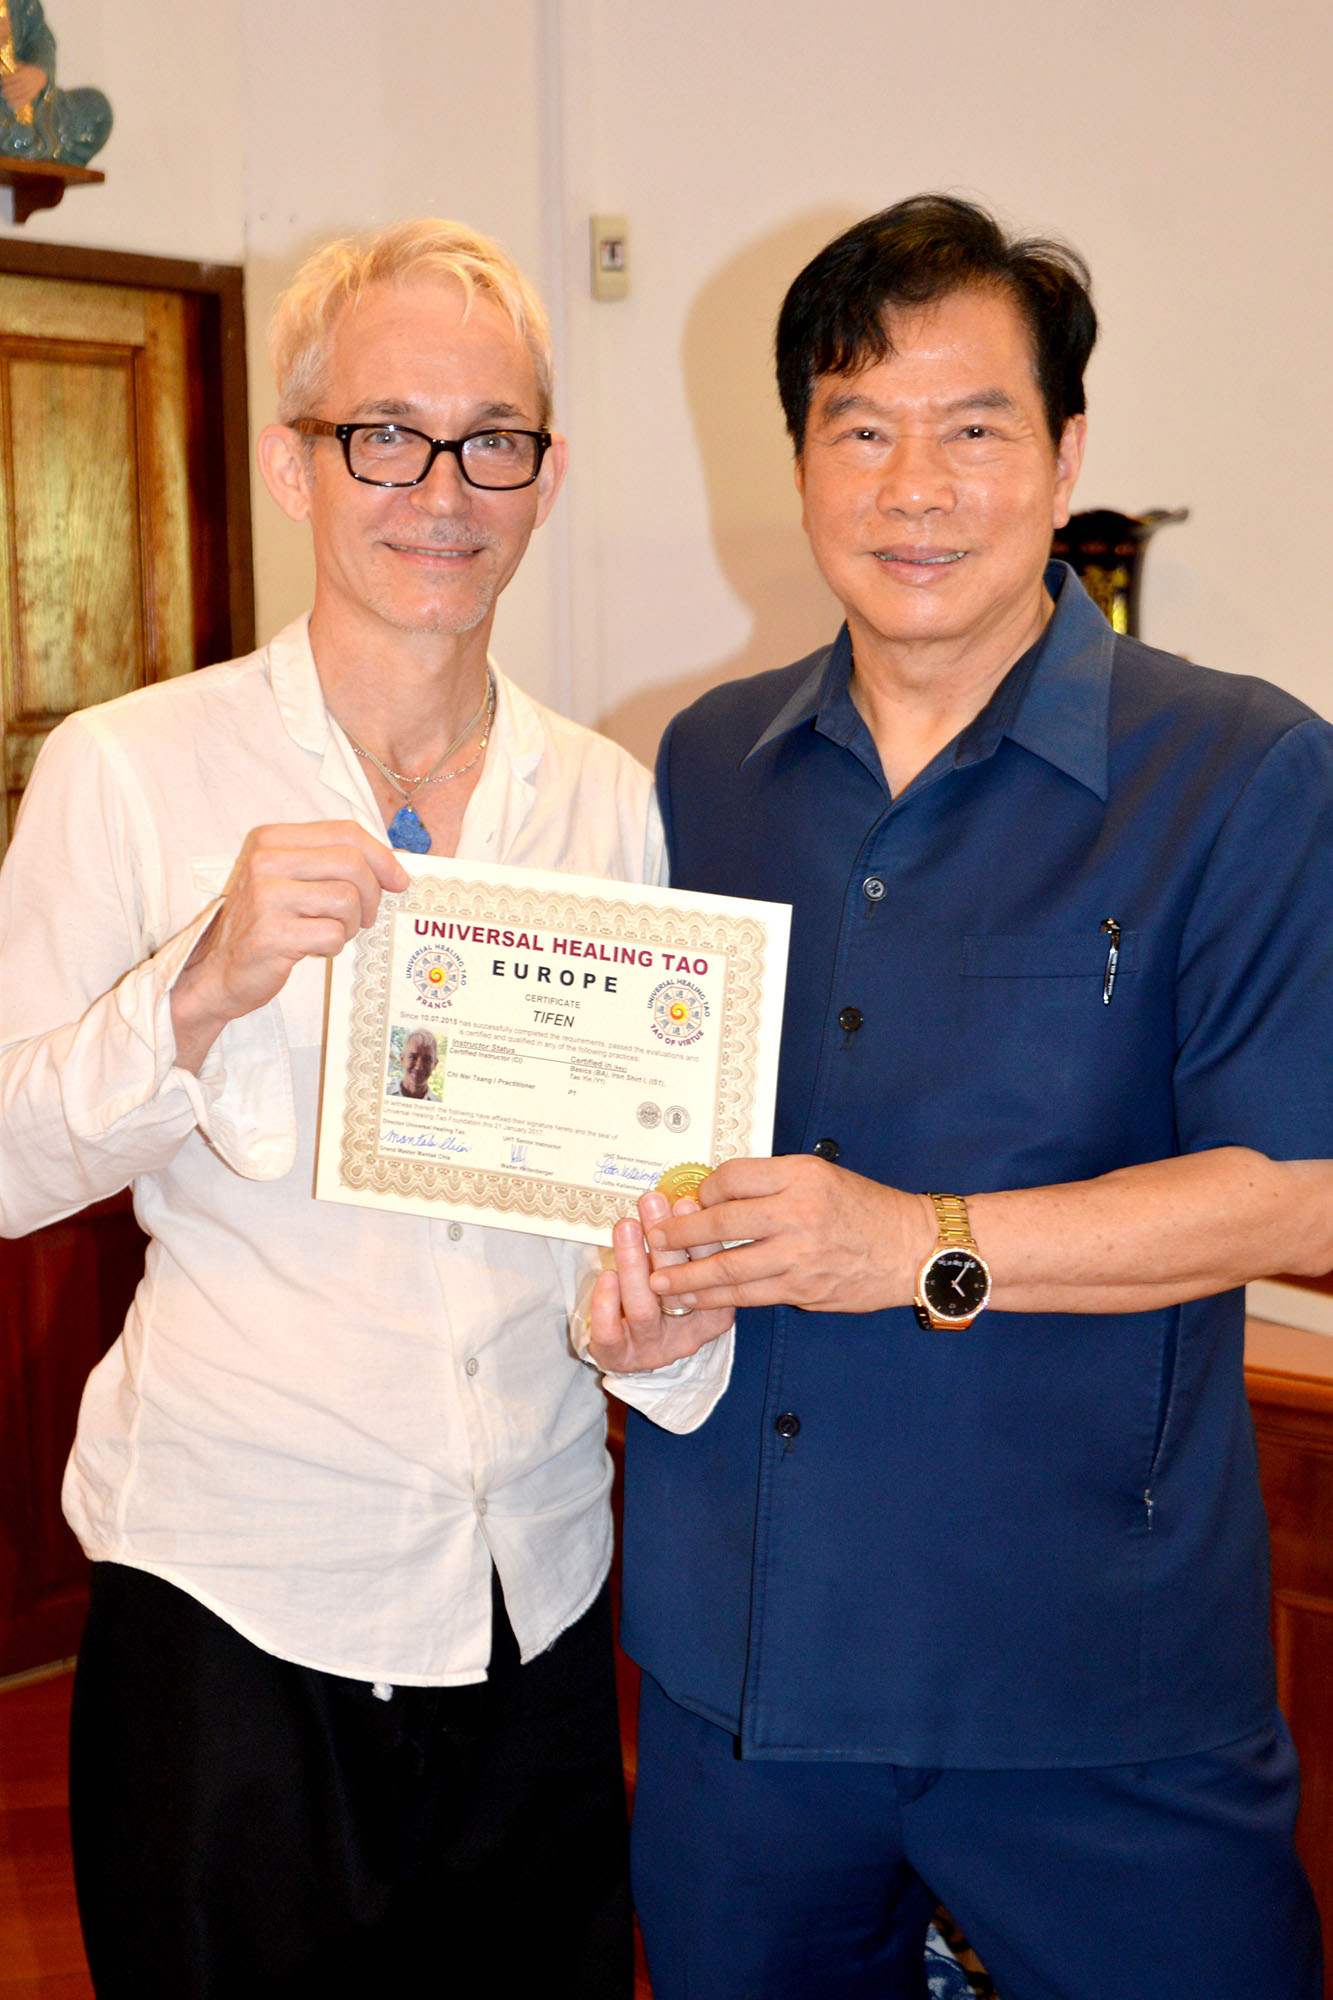 Tifen, instructeur Tao et enseignant certifié Chi-Neï-Tsang, massages aux huiles, fascias, LDFT